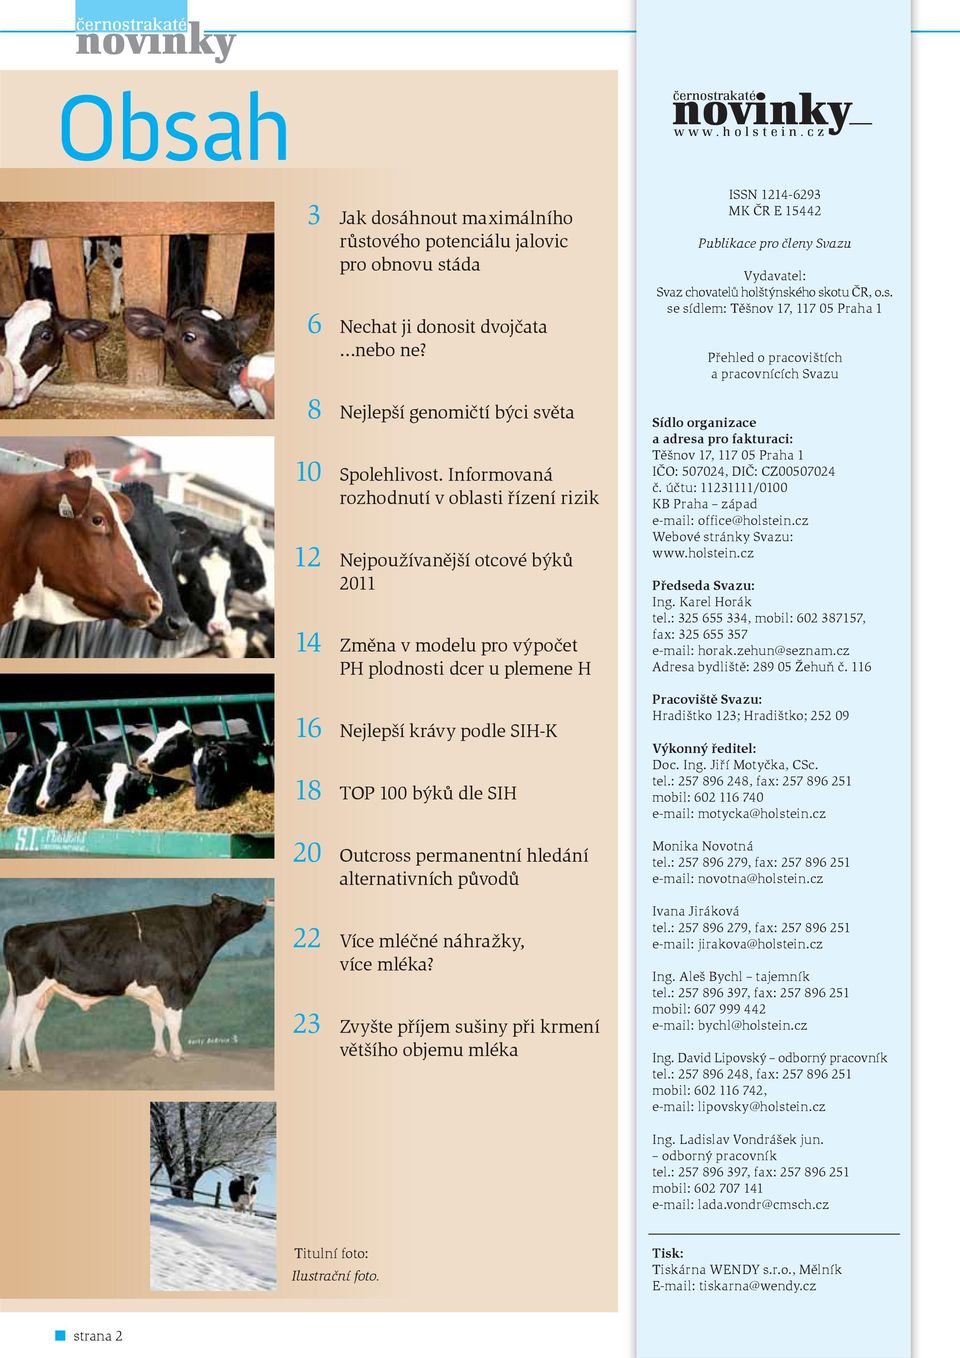 Informovaná rozhodnutí v oblasti řízení rizik 12 Nejpoužívanější otcové býků 2011 14 Změna v modelu pro výpočet PH plodnosti dcer u plemene H 16 Nejlepší krávy podle SIH-K 18 TOP 100 býků dle SIH 20